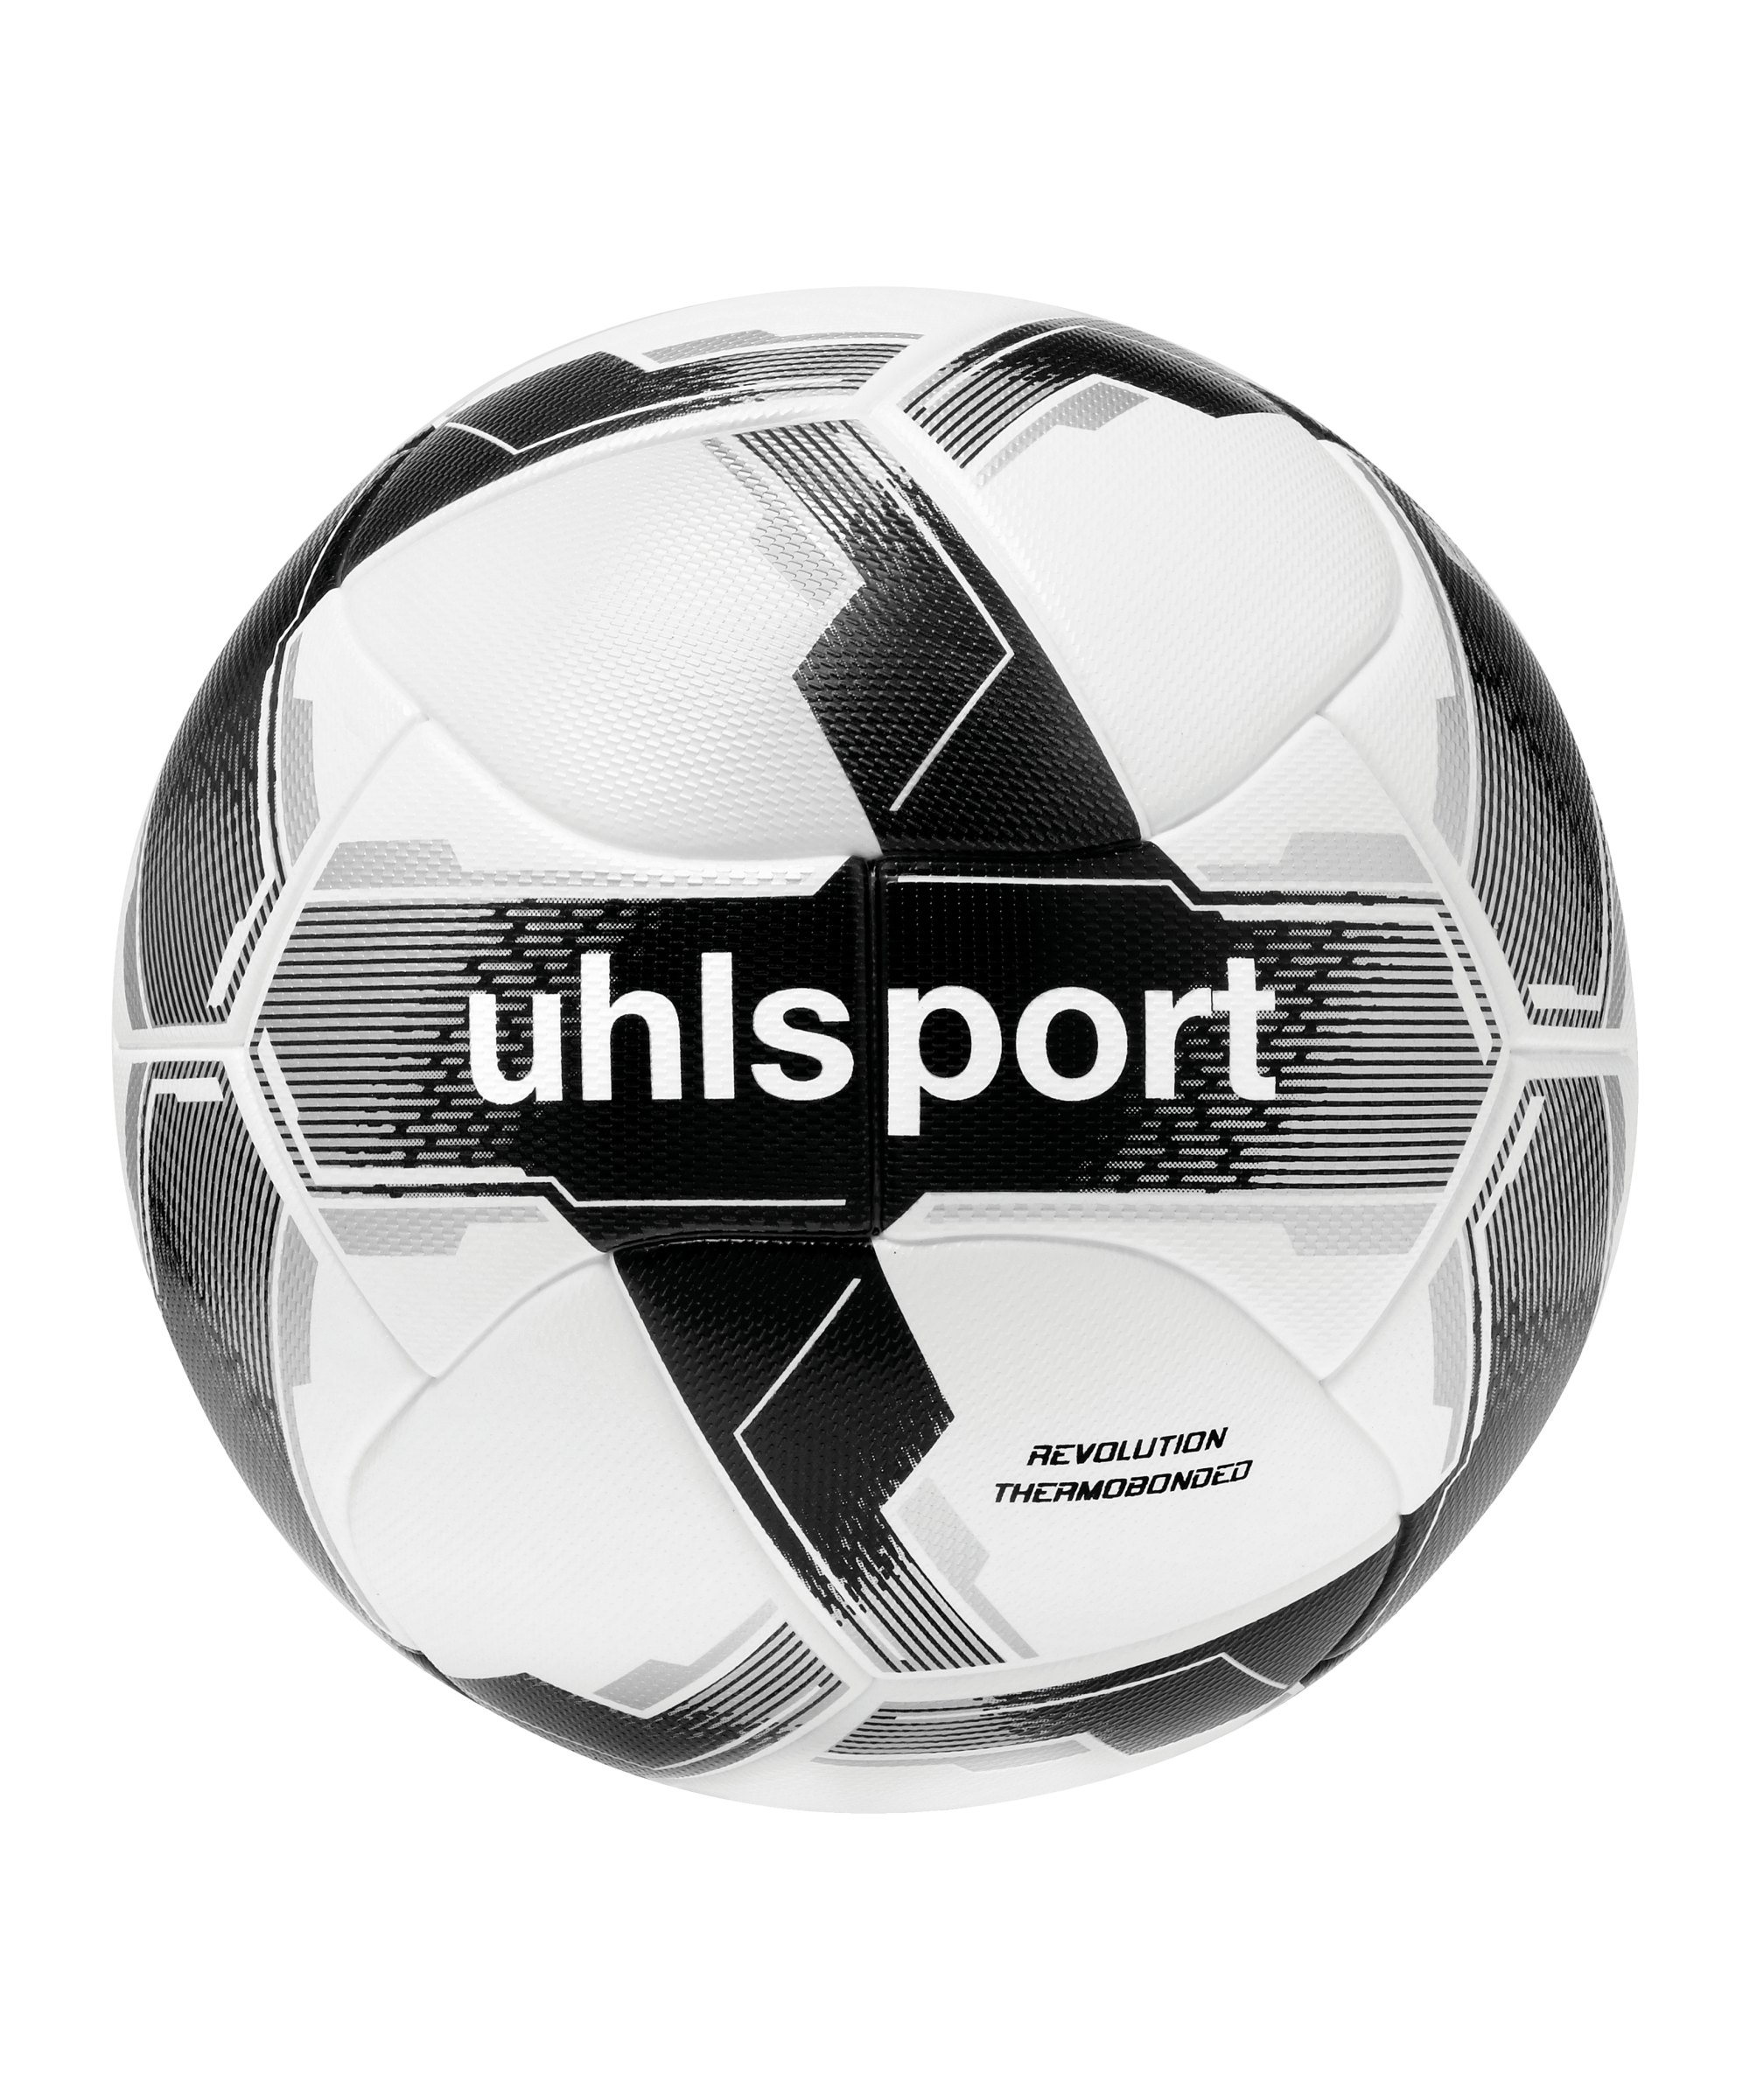 Uhlsport Revolution Spielball Weiss Schwarz F01 - weiss